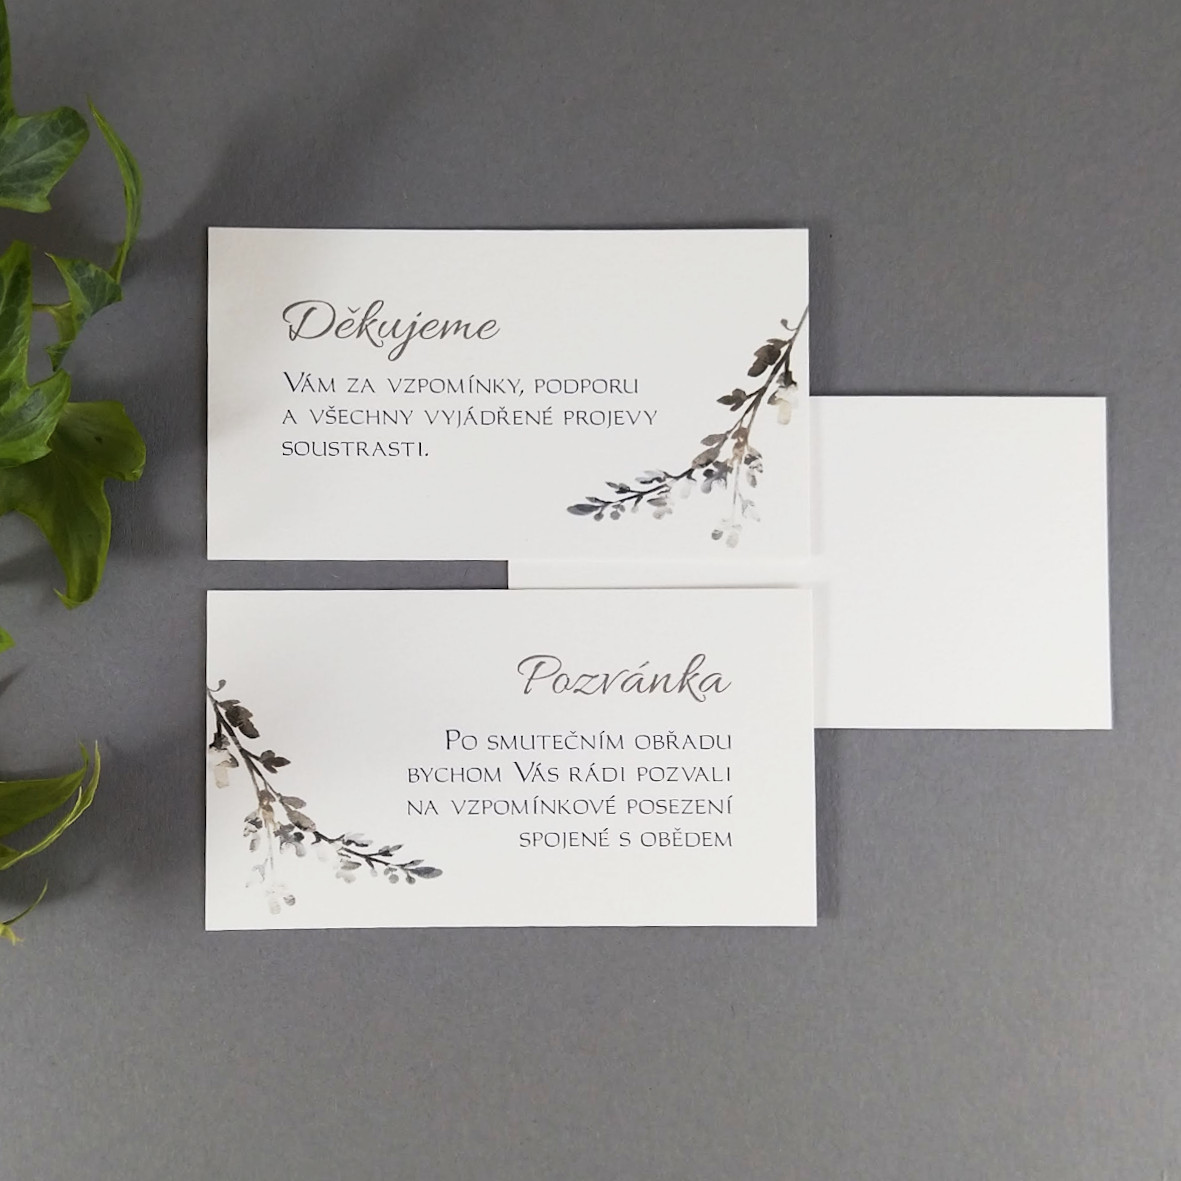 Pozvánka, informační karta – s motivem větvičky šedobílého vřesu, formát 85 × 55 mm, oboustranná